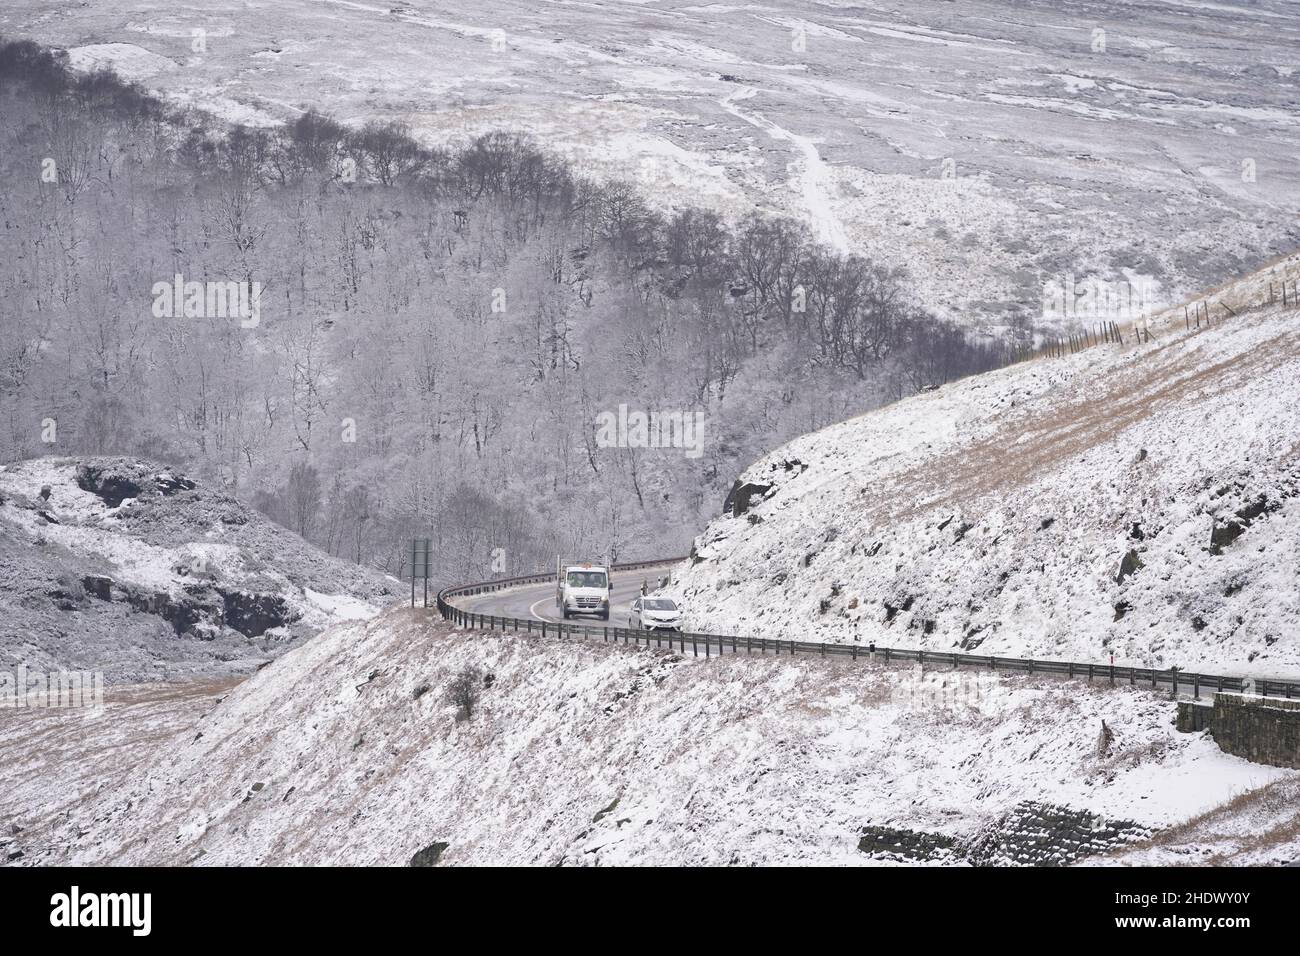 Les véhicules se dirigent vers la neige fraîche automne A628 à Woodhead Pass.Date de la photo: Vendredi 7 janvier 2022. Banque D'Images